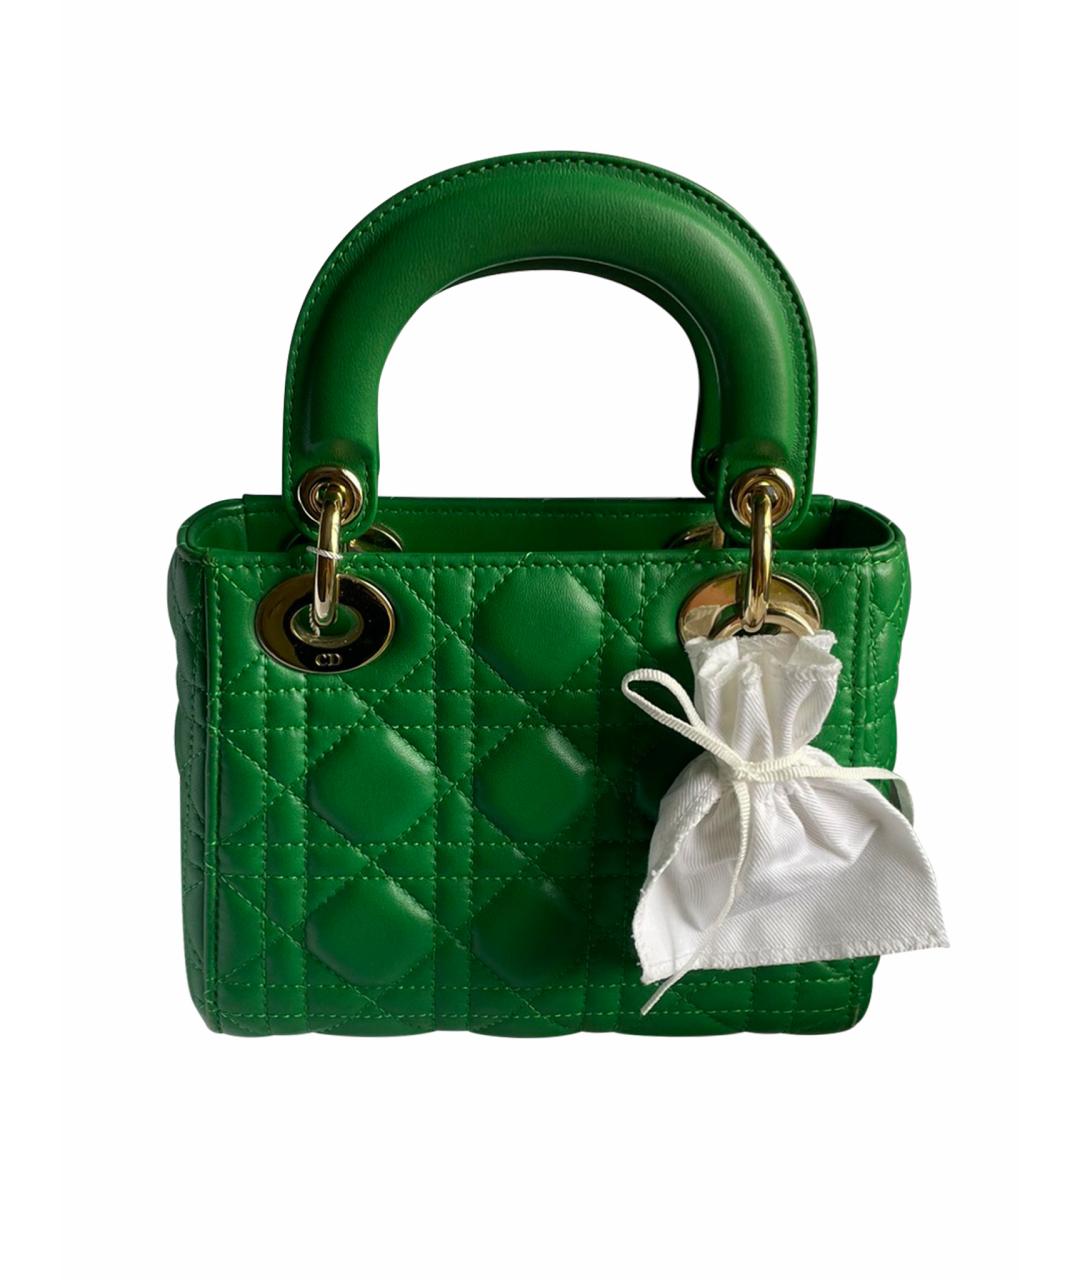 CHRISTIAN DIOR PRE-OWNED Зеленая кожаная сумка с короткими ручками, фото 1